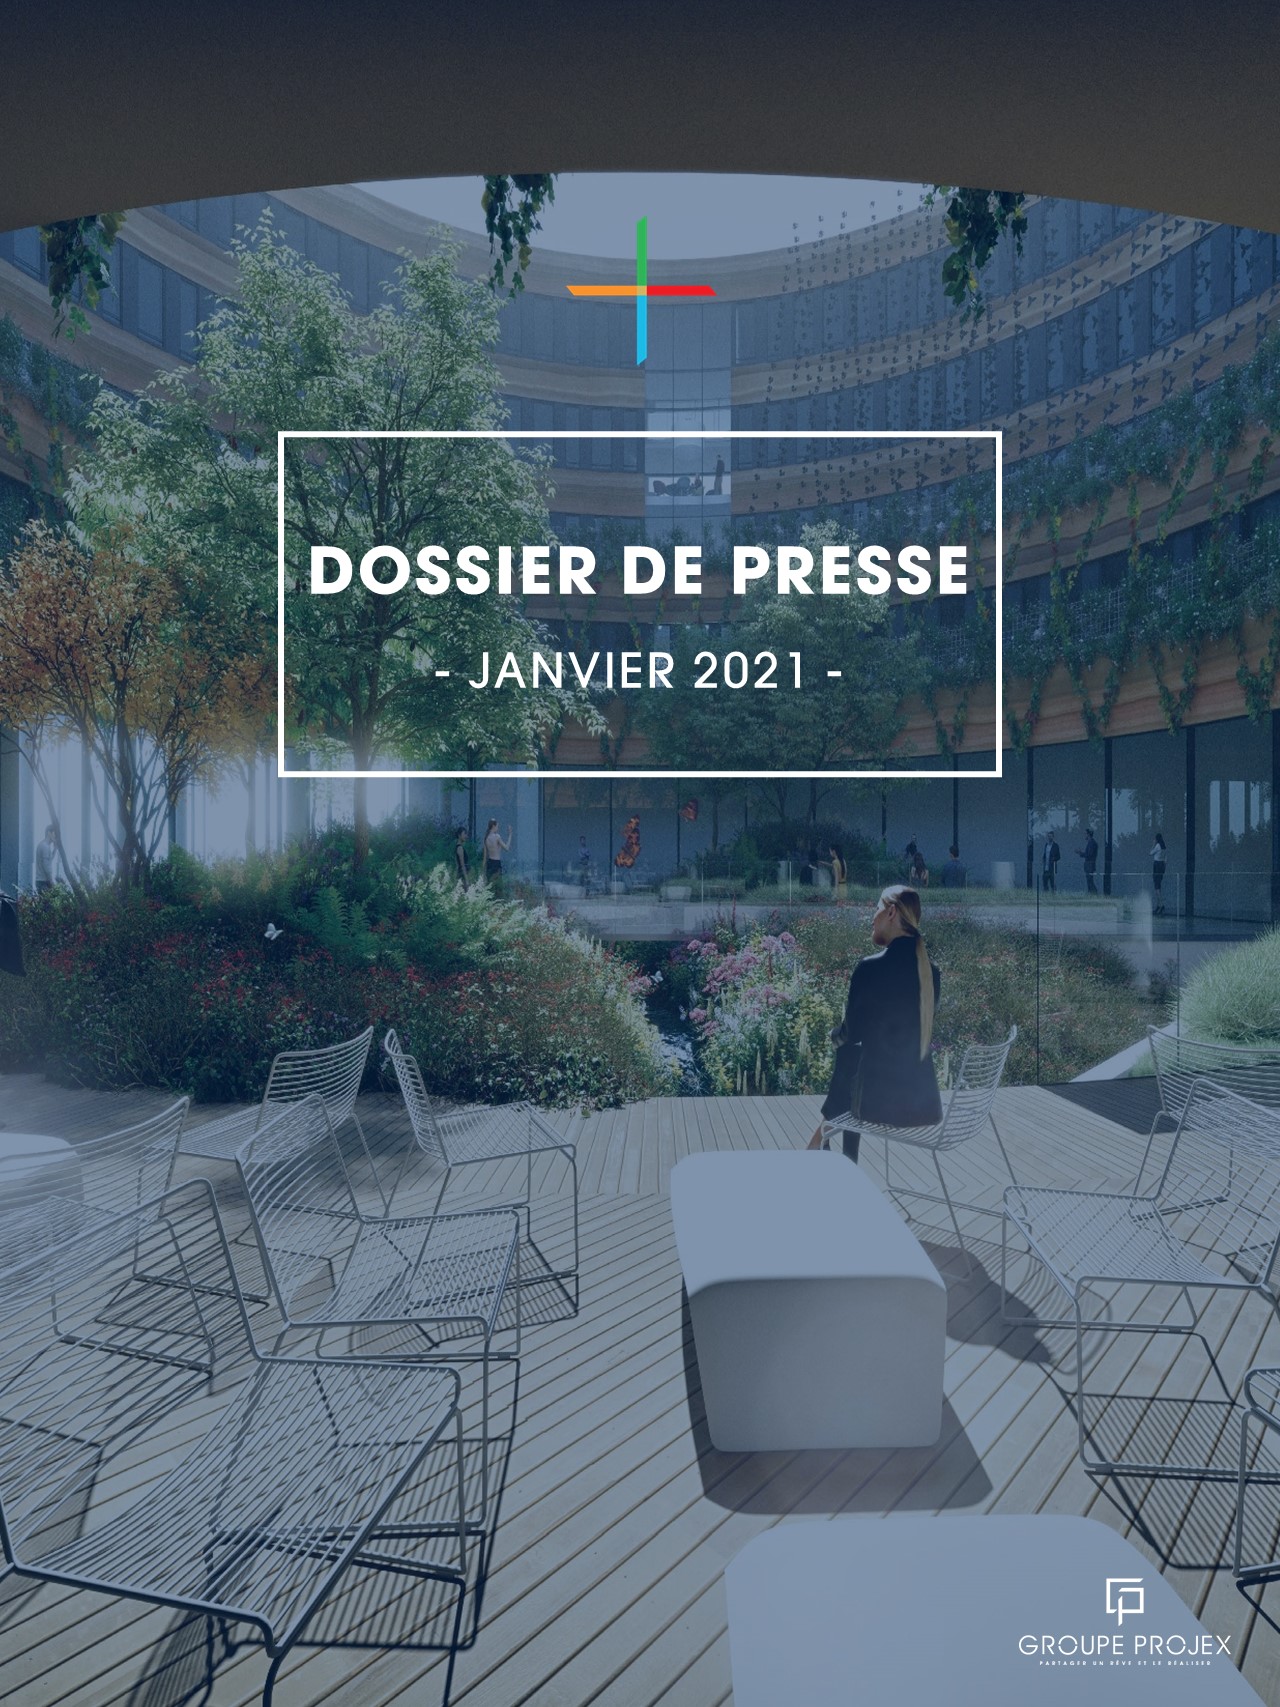 //www.groupe-projex.fr/wp-content/uploads/2021/01/DOSSIER-DE-PRESSE-JANVIER-couv.jpg